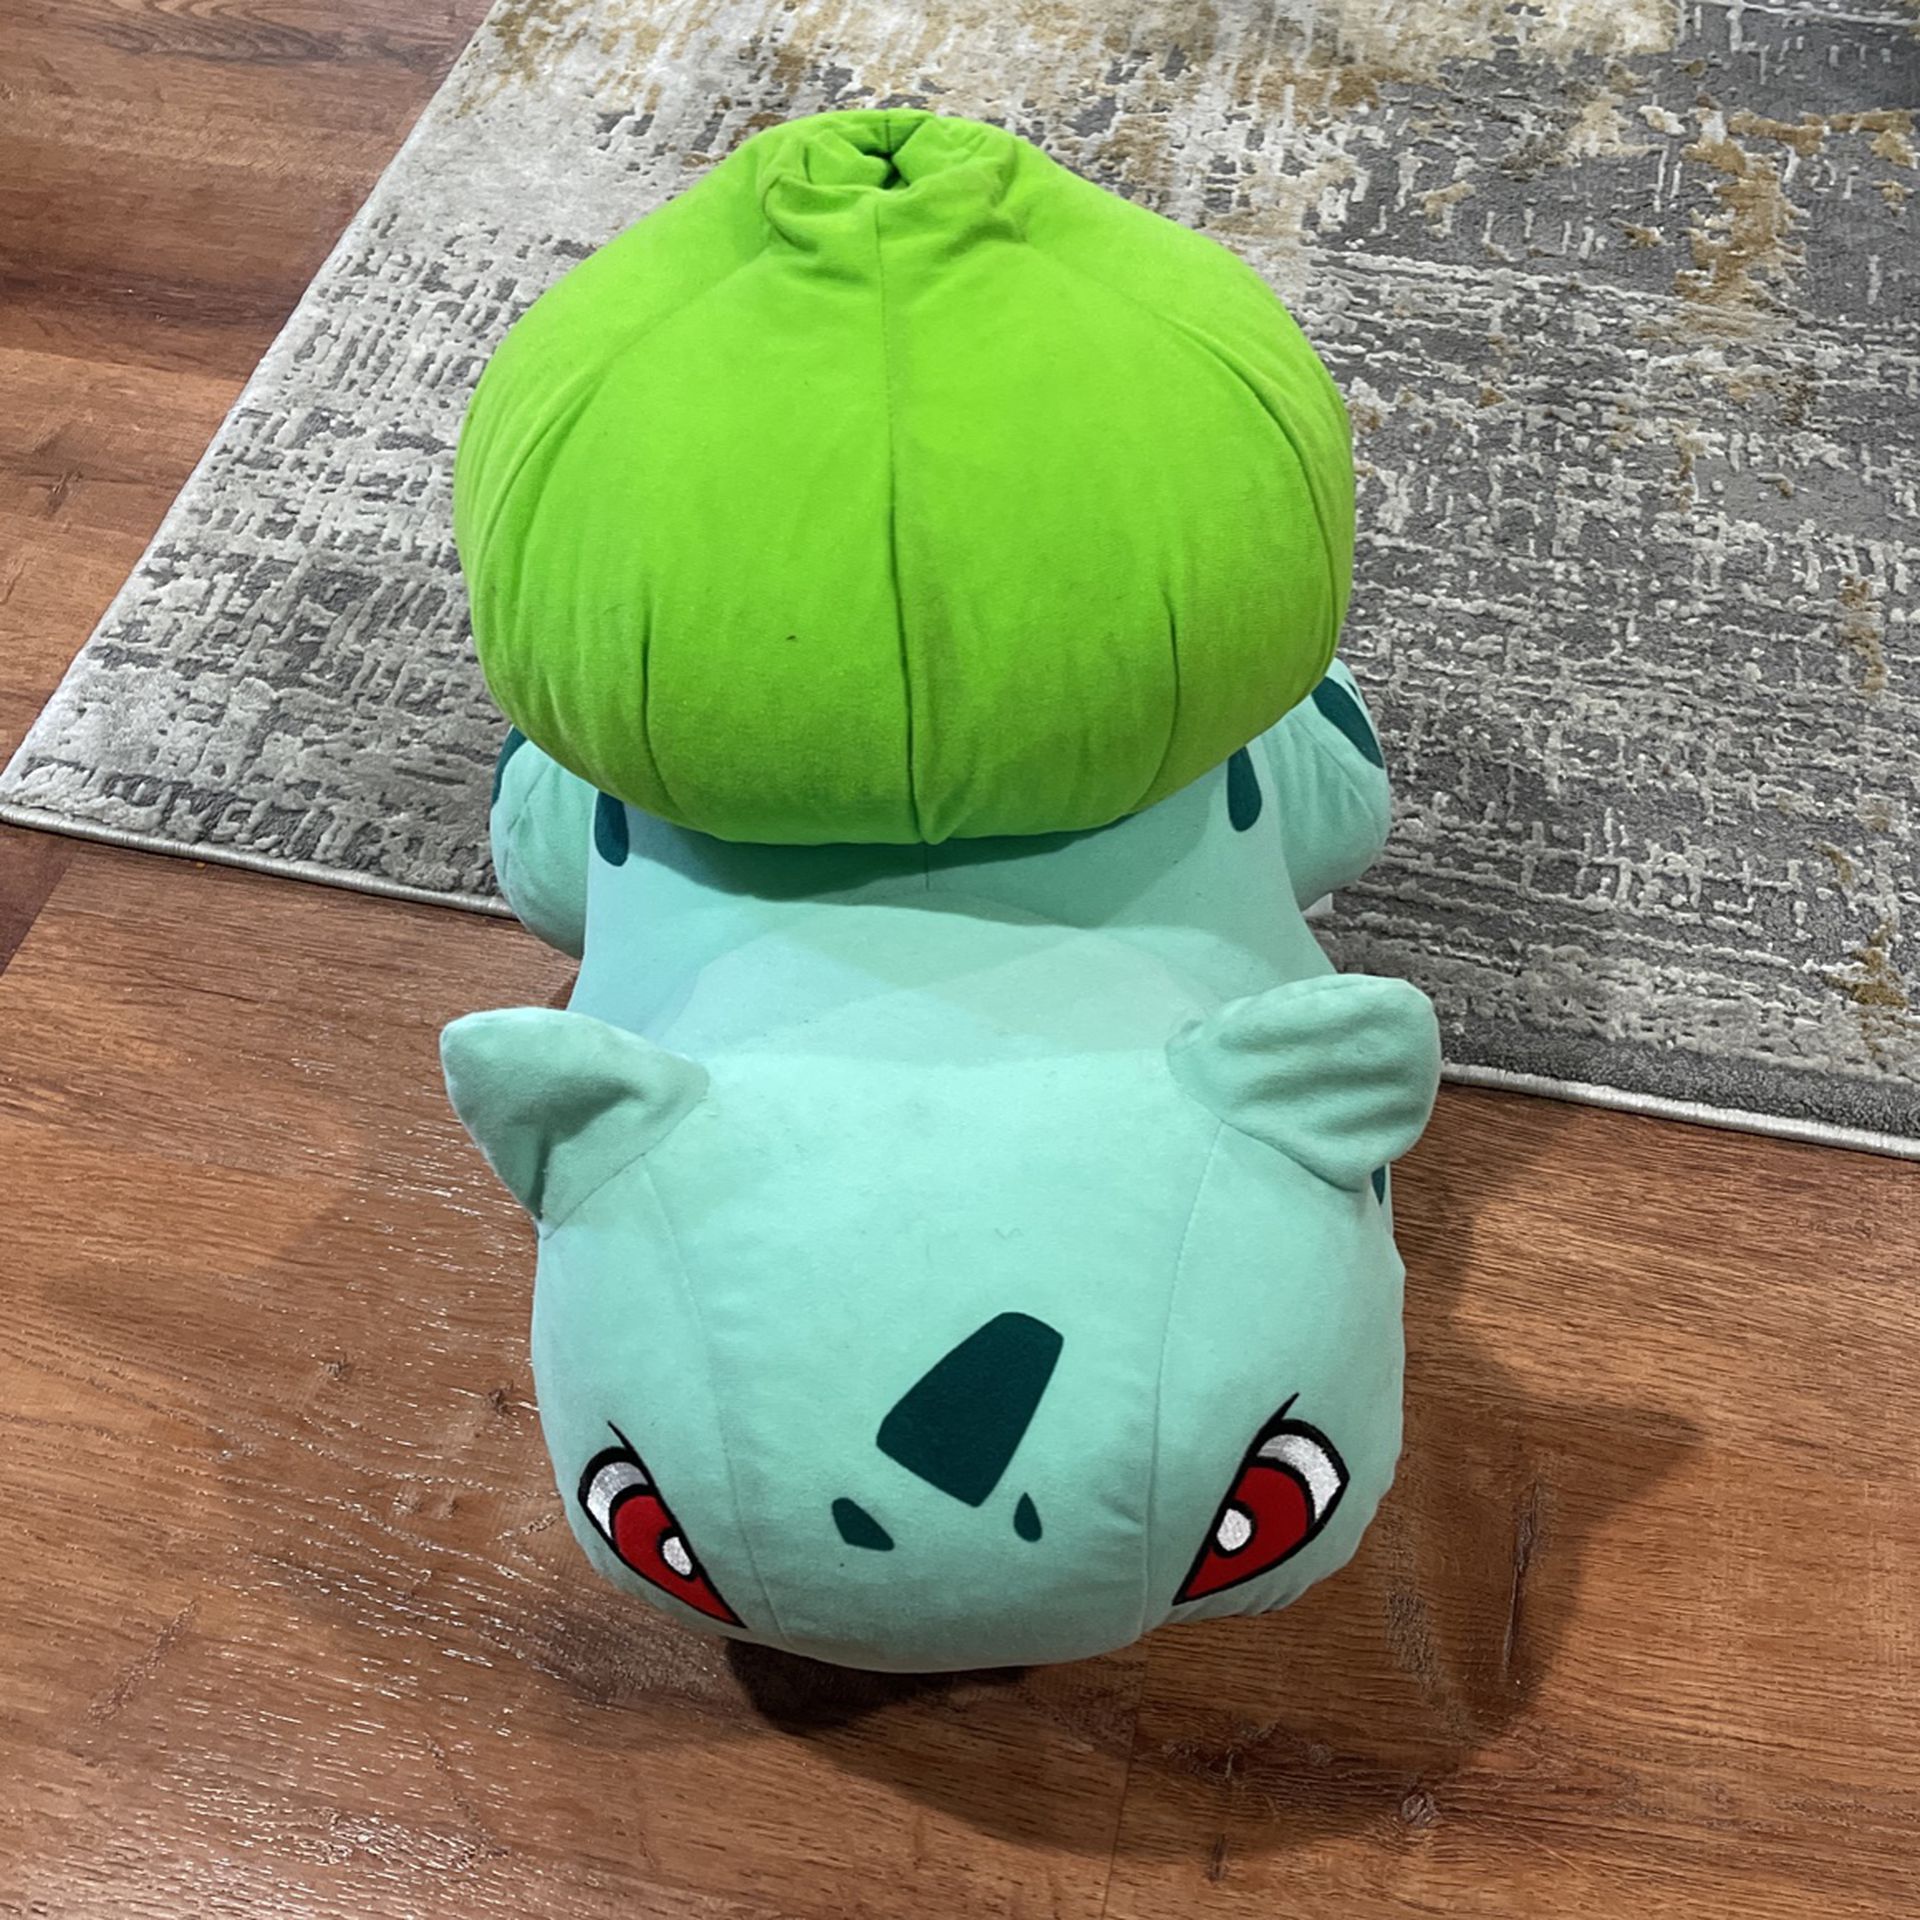 Pokémon giant balbasuar Plush Toy